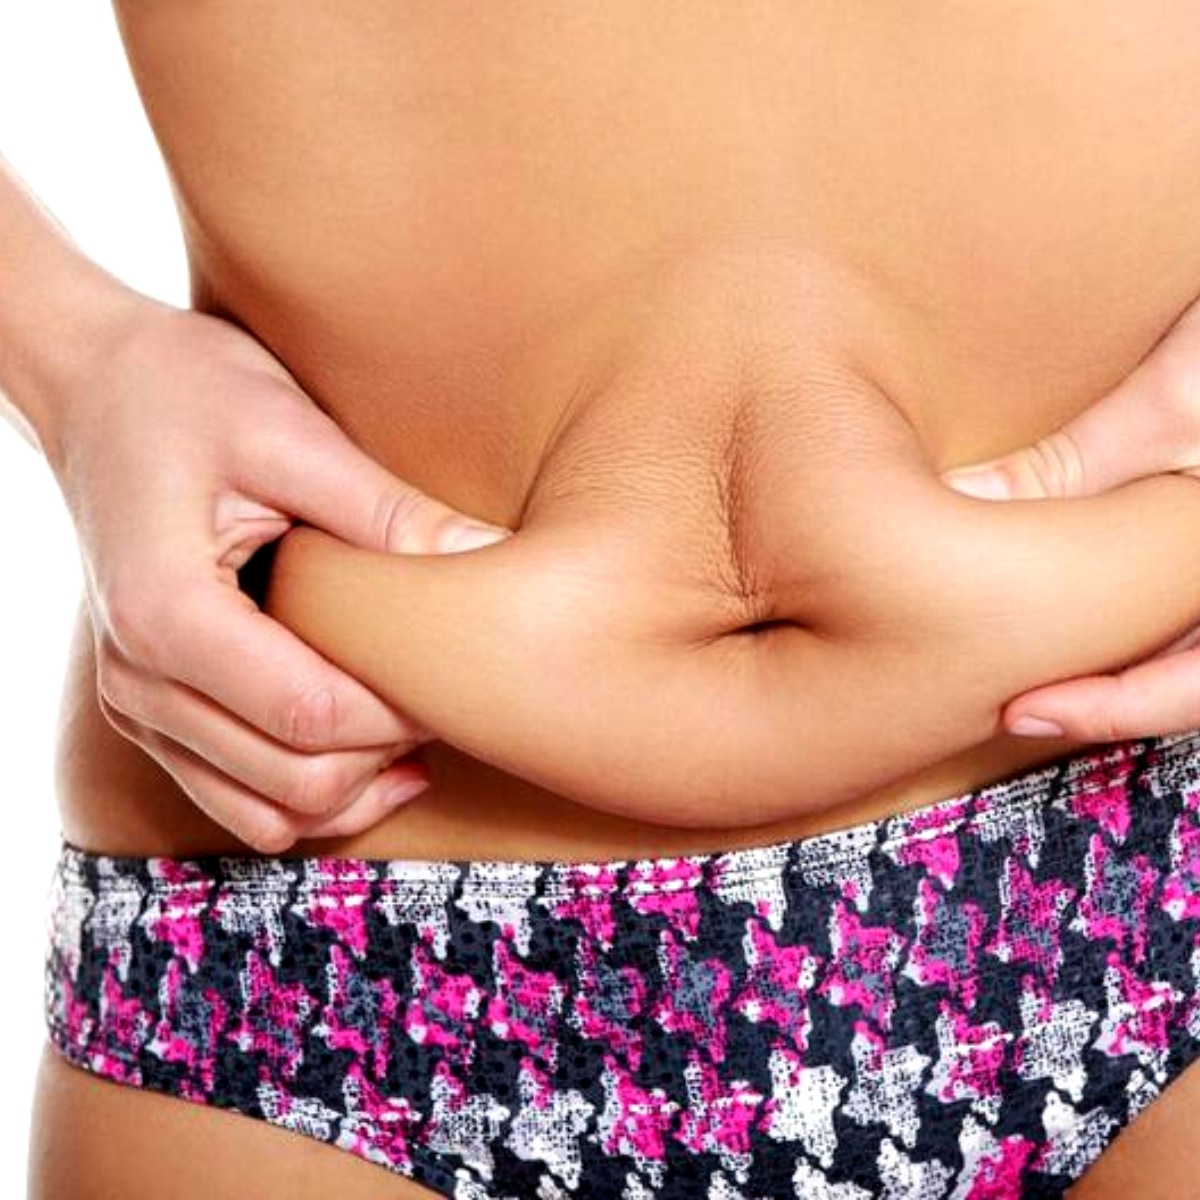 Causas da gordura localizada podem ser várias